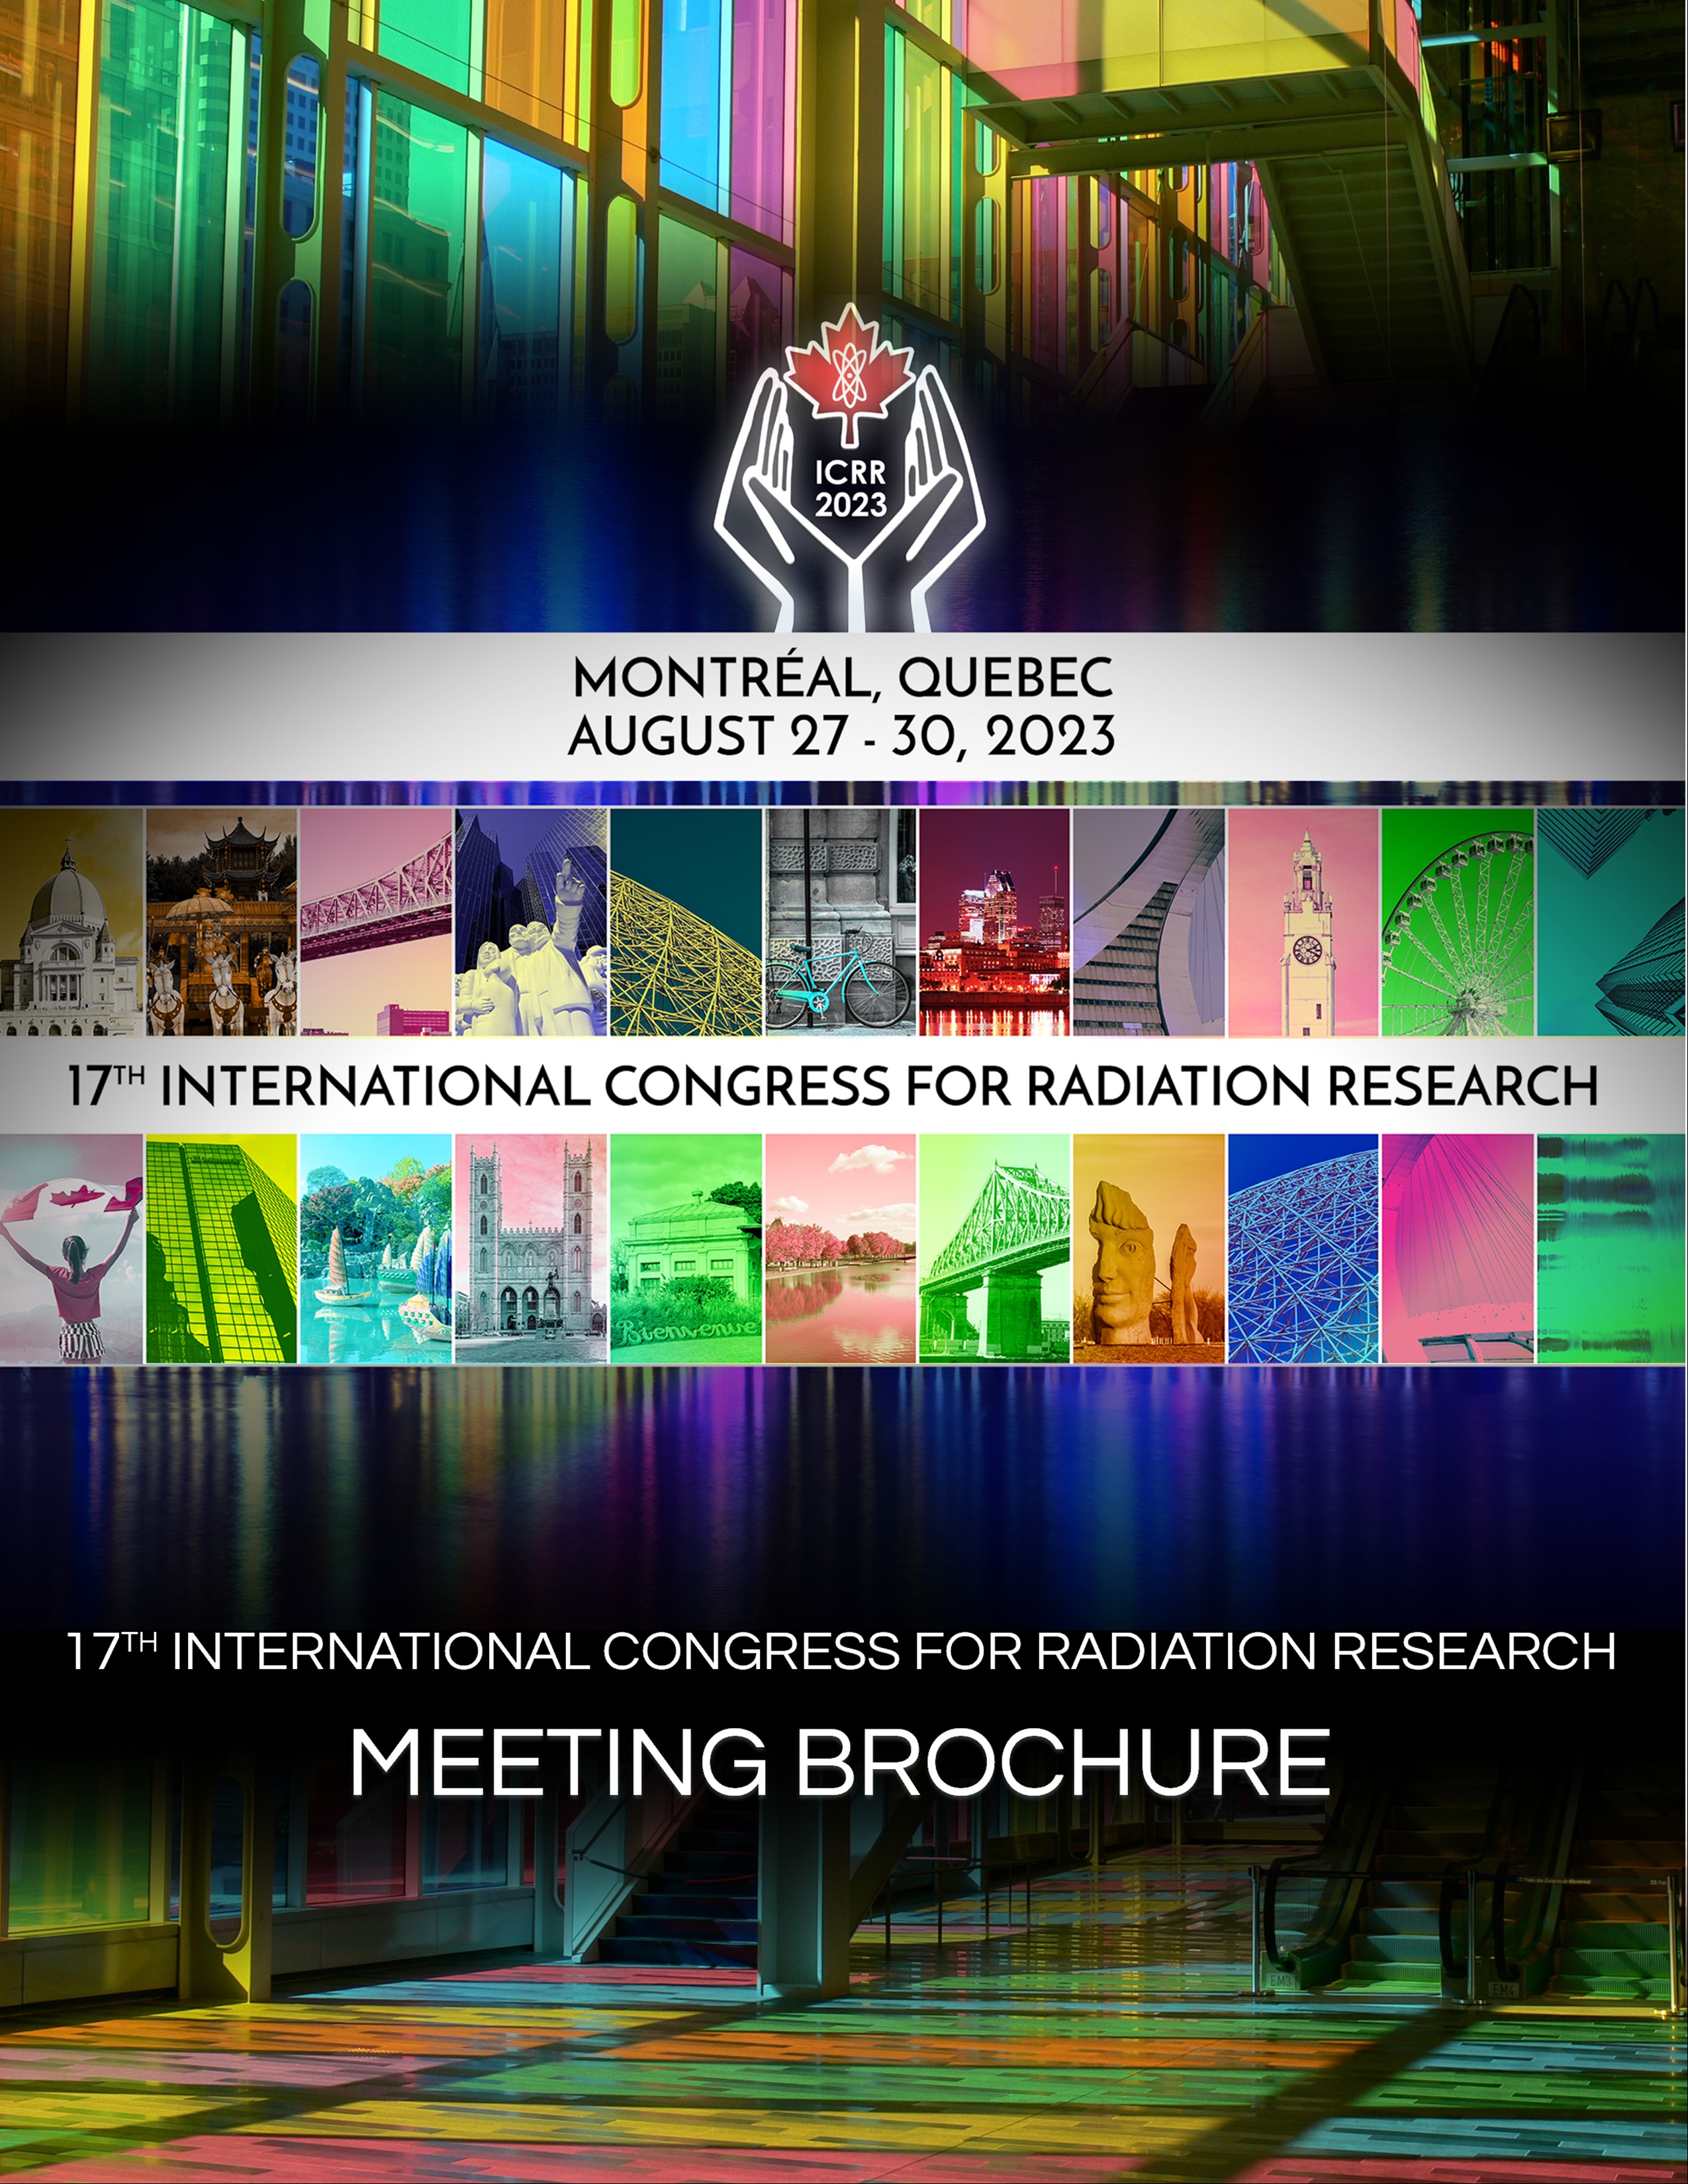 ICRR 2023 Meeting Brochure